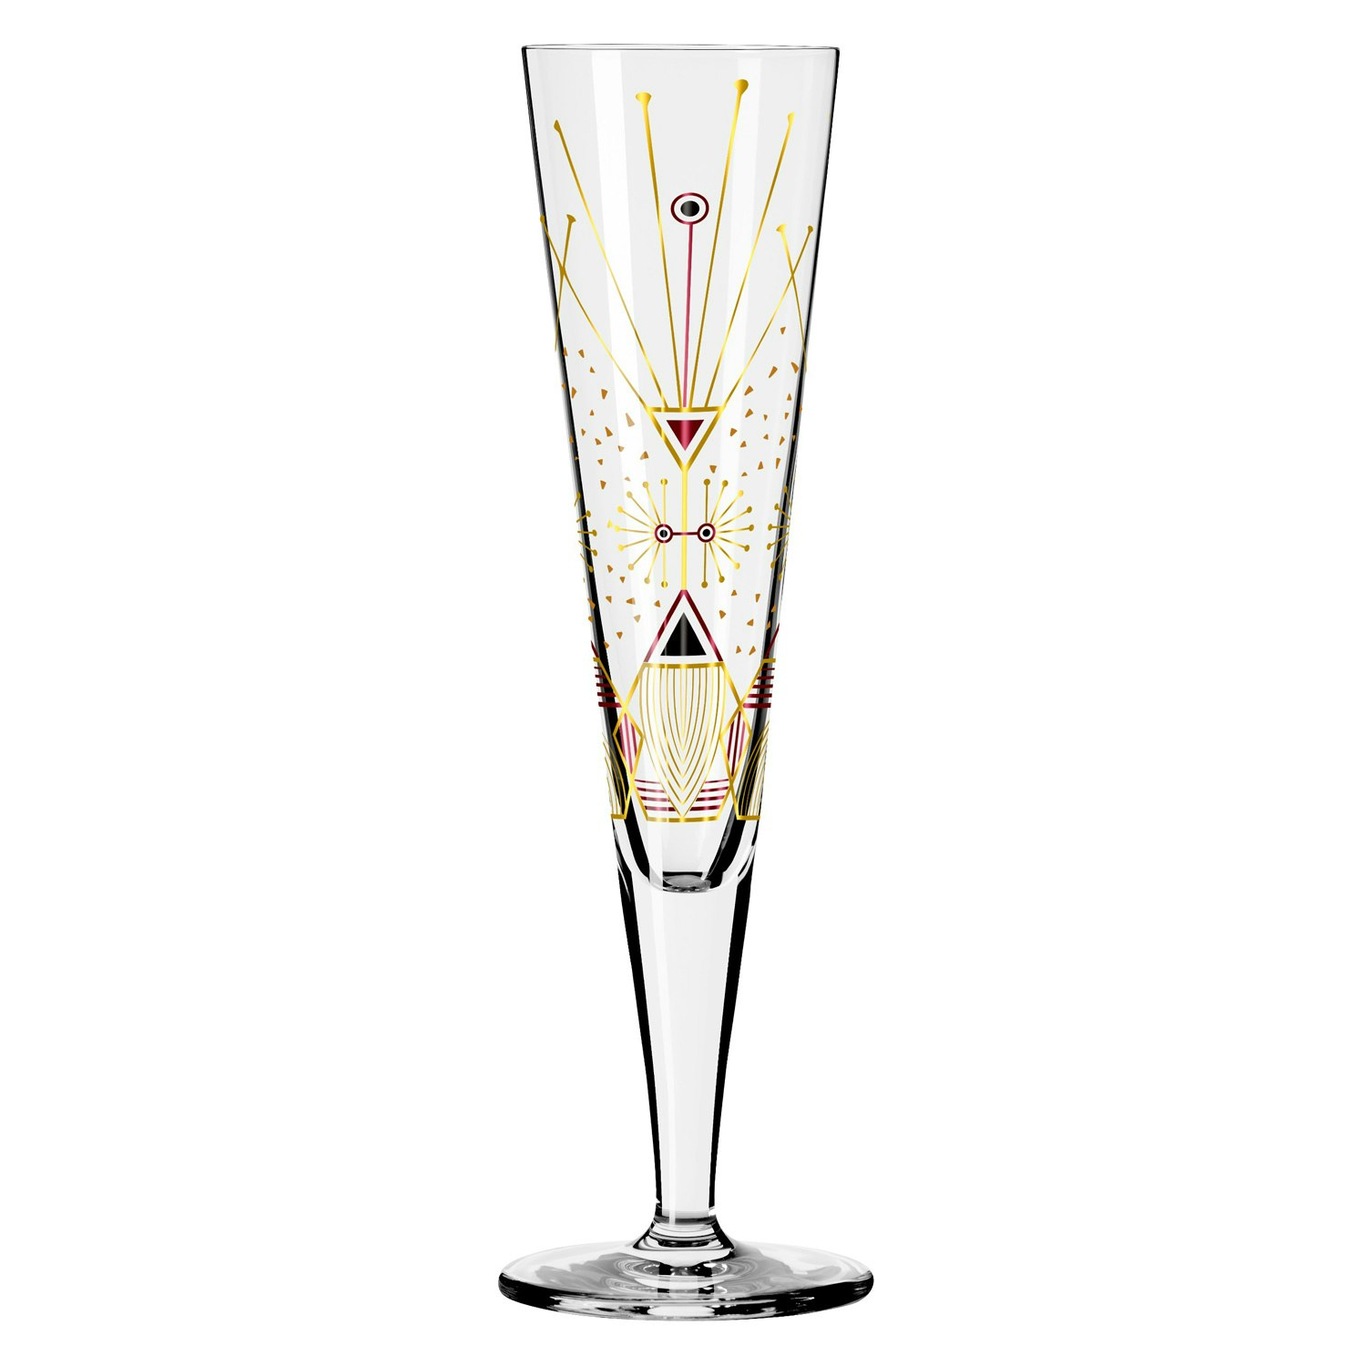 25 Ritzenhoff - RoyalDesign Goldnacht NO: @ Champagne Glass,